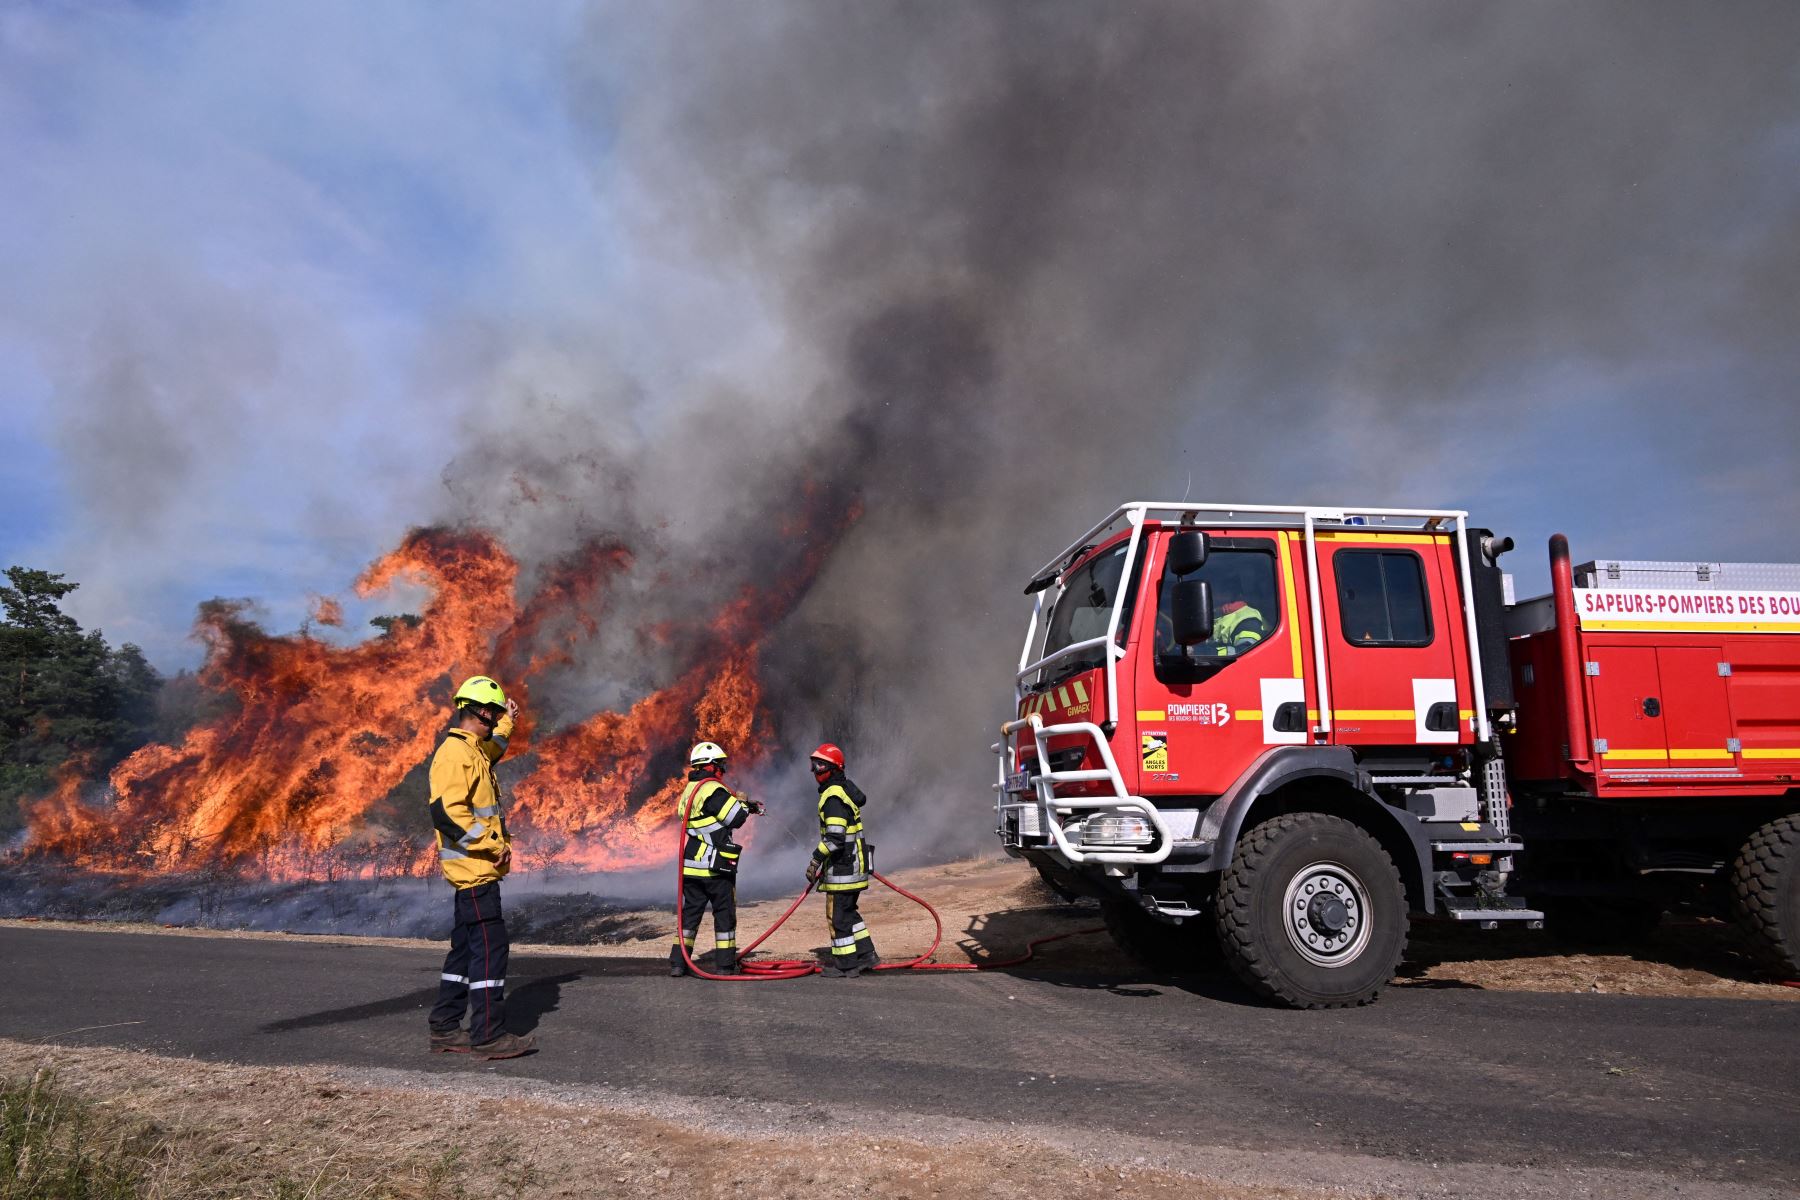 Los bomberos trabajan para extinguir un incendio forestal en Boyne, en el sur de Francia, en el "parque natural de Grands Causses".
Foto: AFP